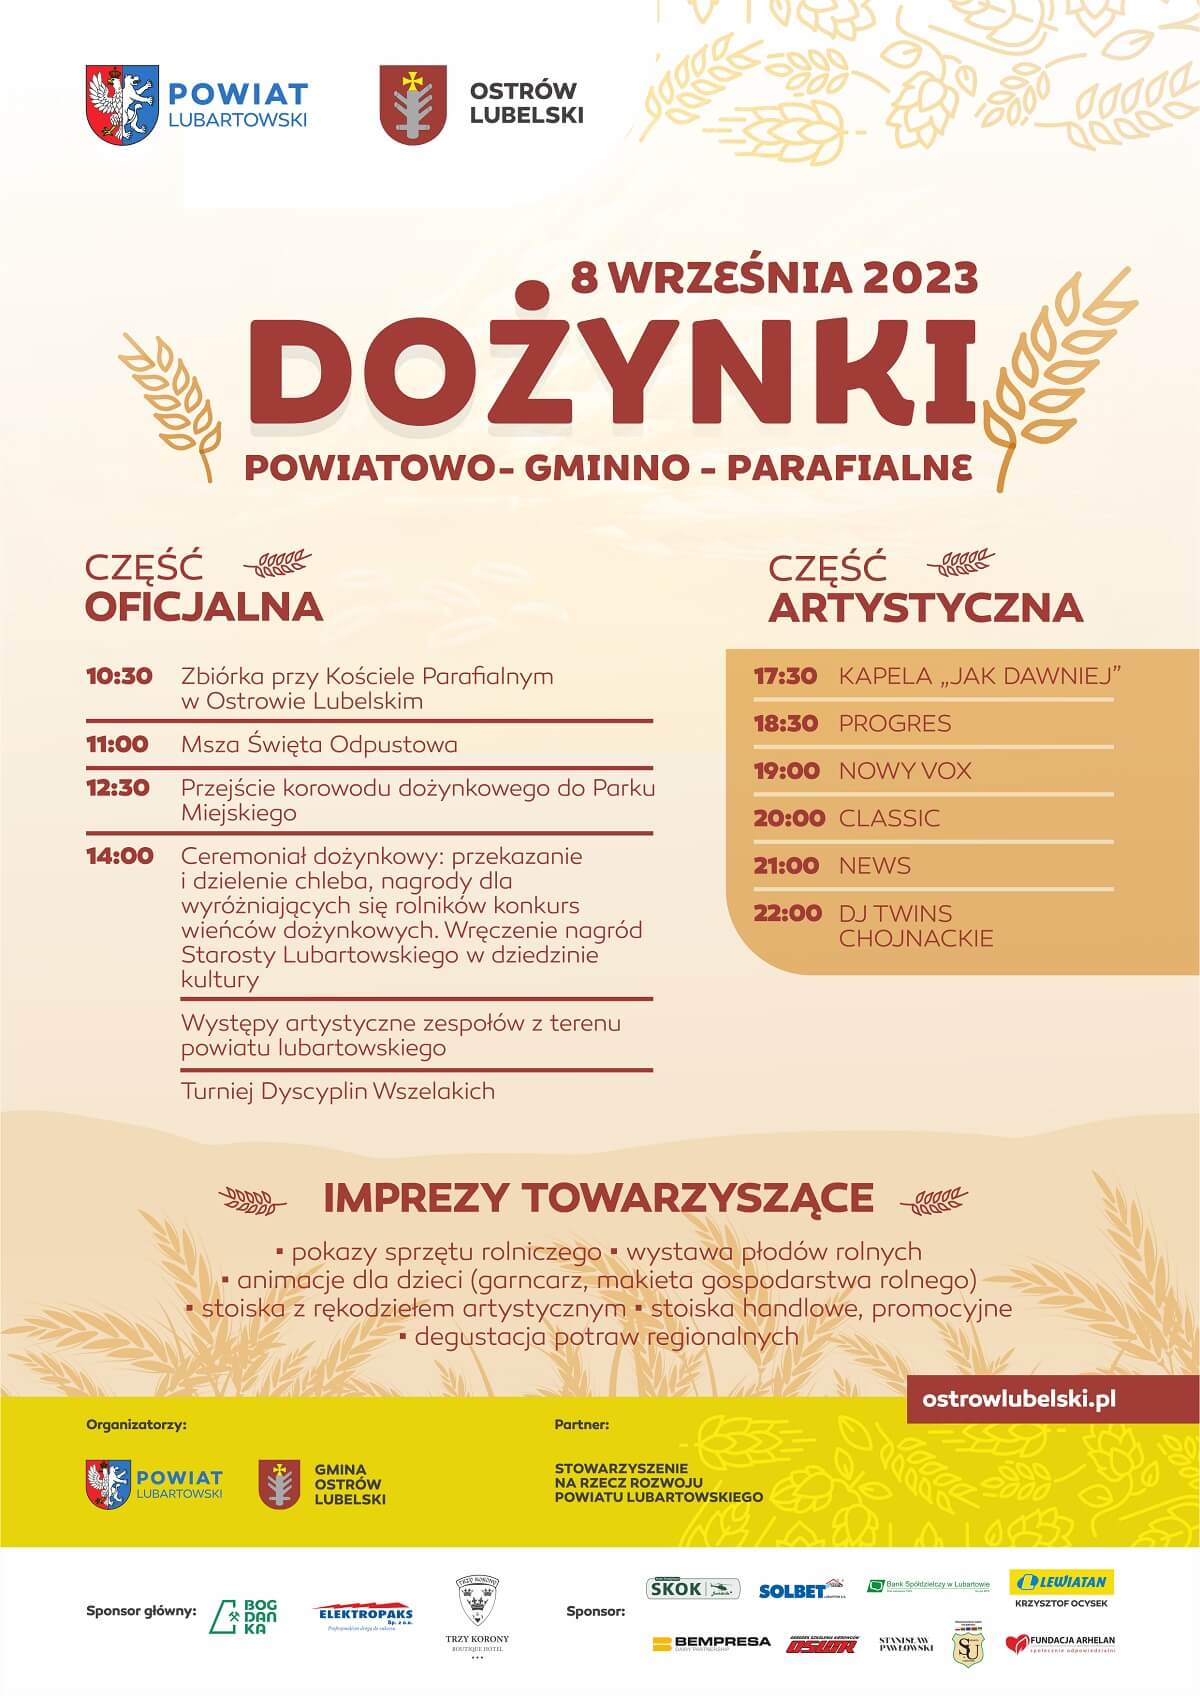 Dożynki w Ostrowie Lubelskim 2023 - plakat, program wydarzenia